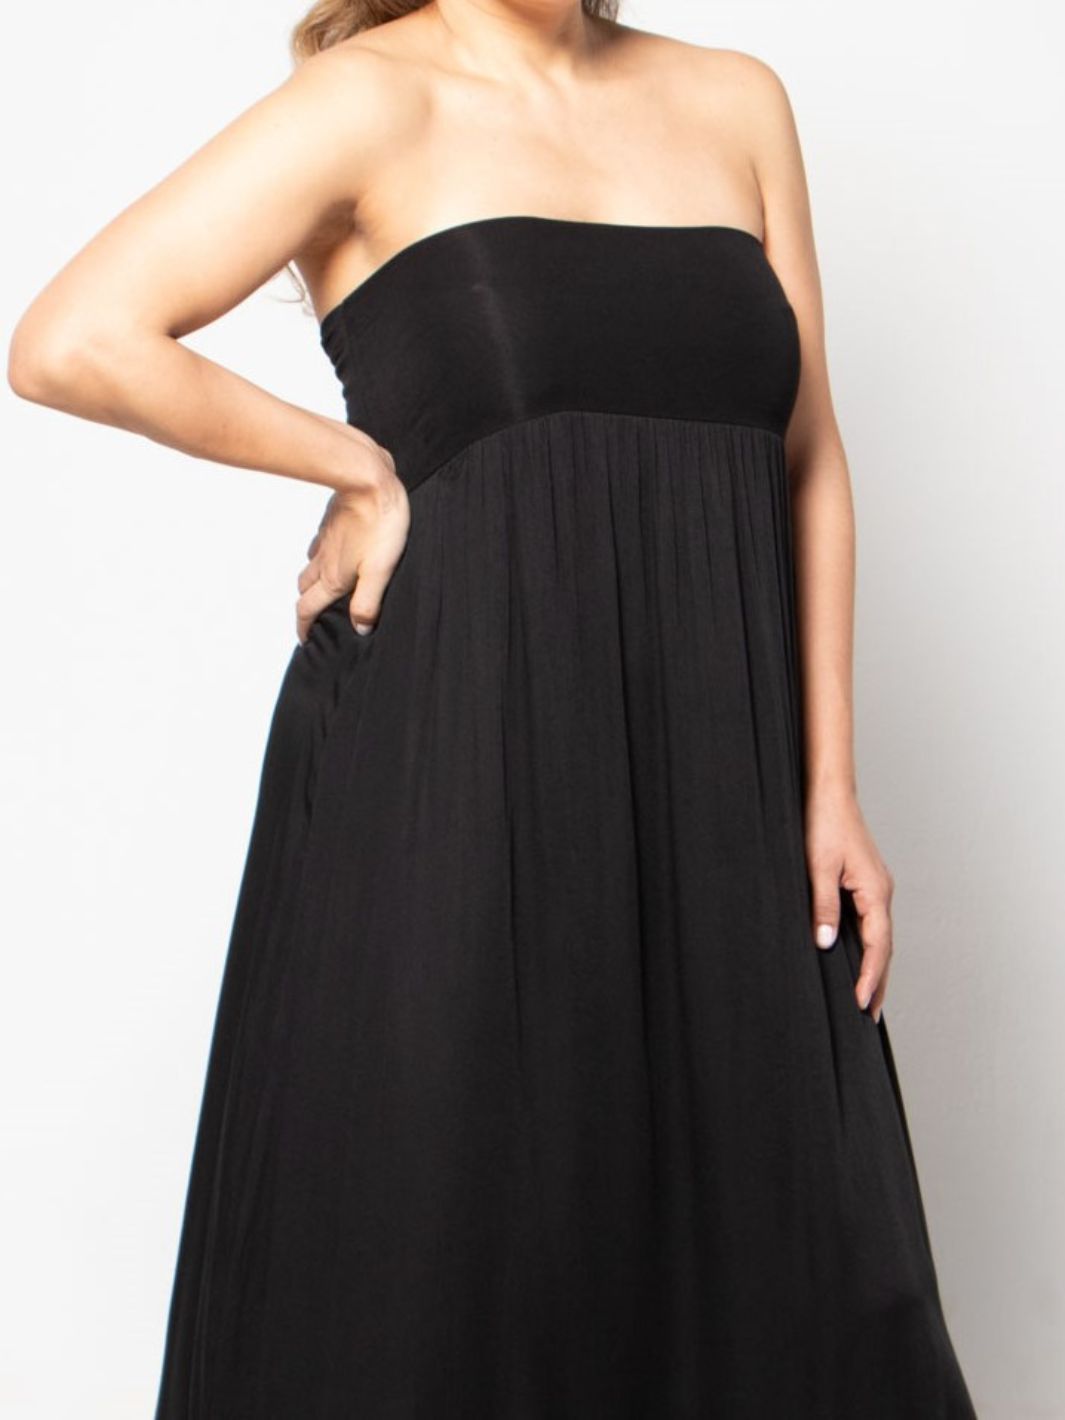 Sleeveless Skirt Dress - Black